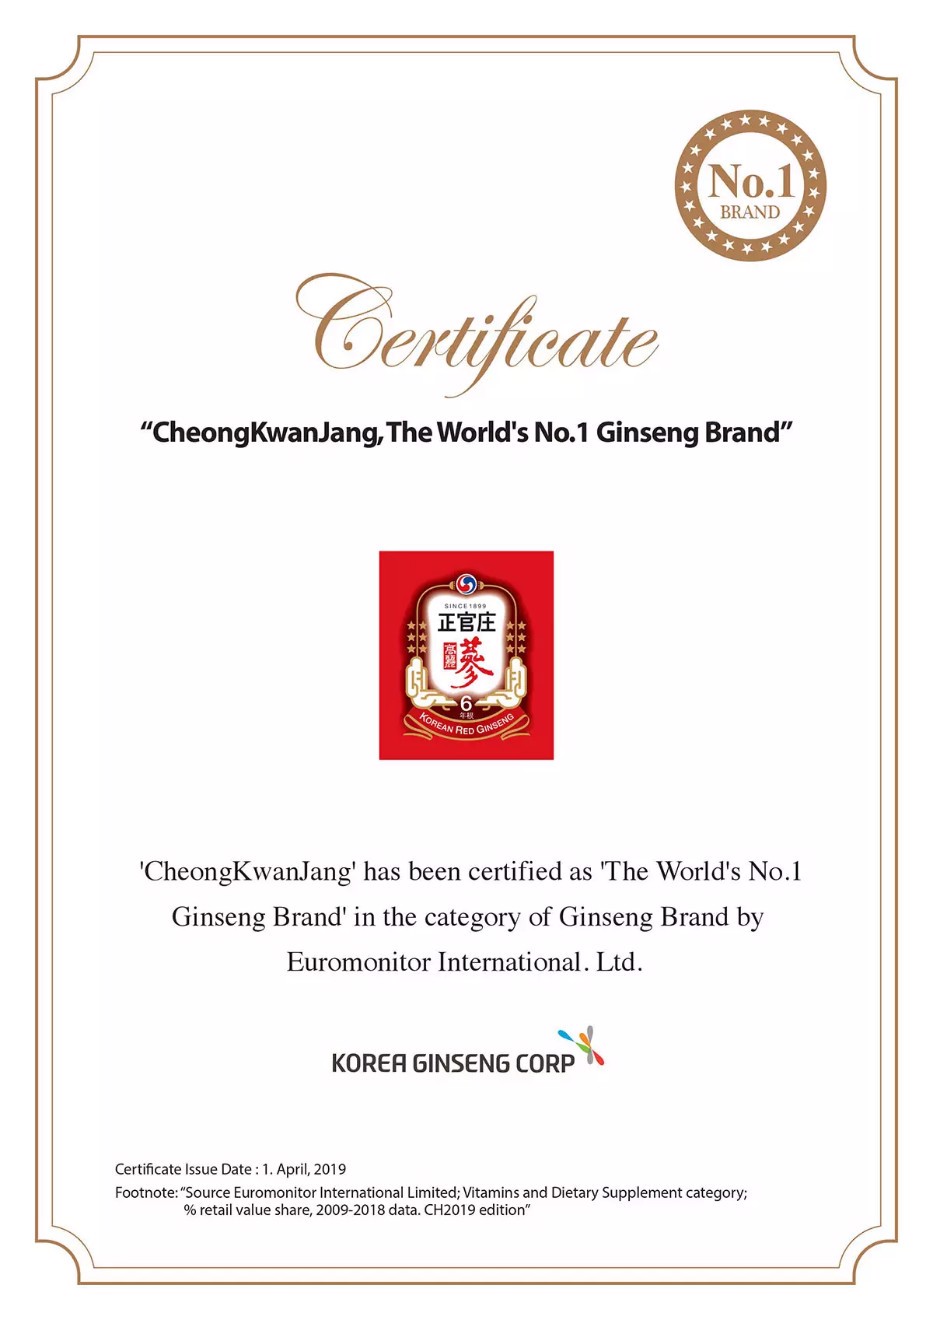 Chứng nhận chất lượng hàng đầu của sản phẩm hồng sâm từ thương hiệu KGC